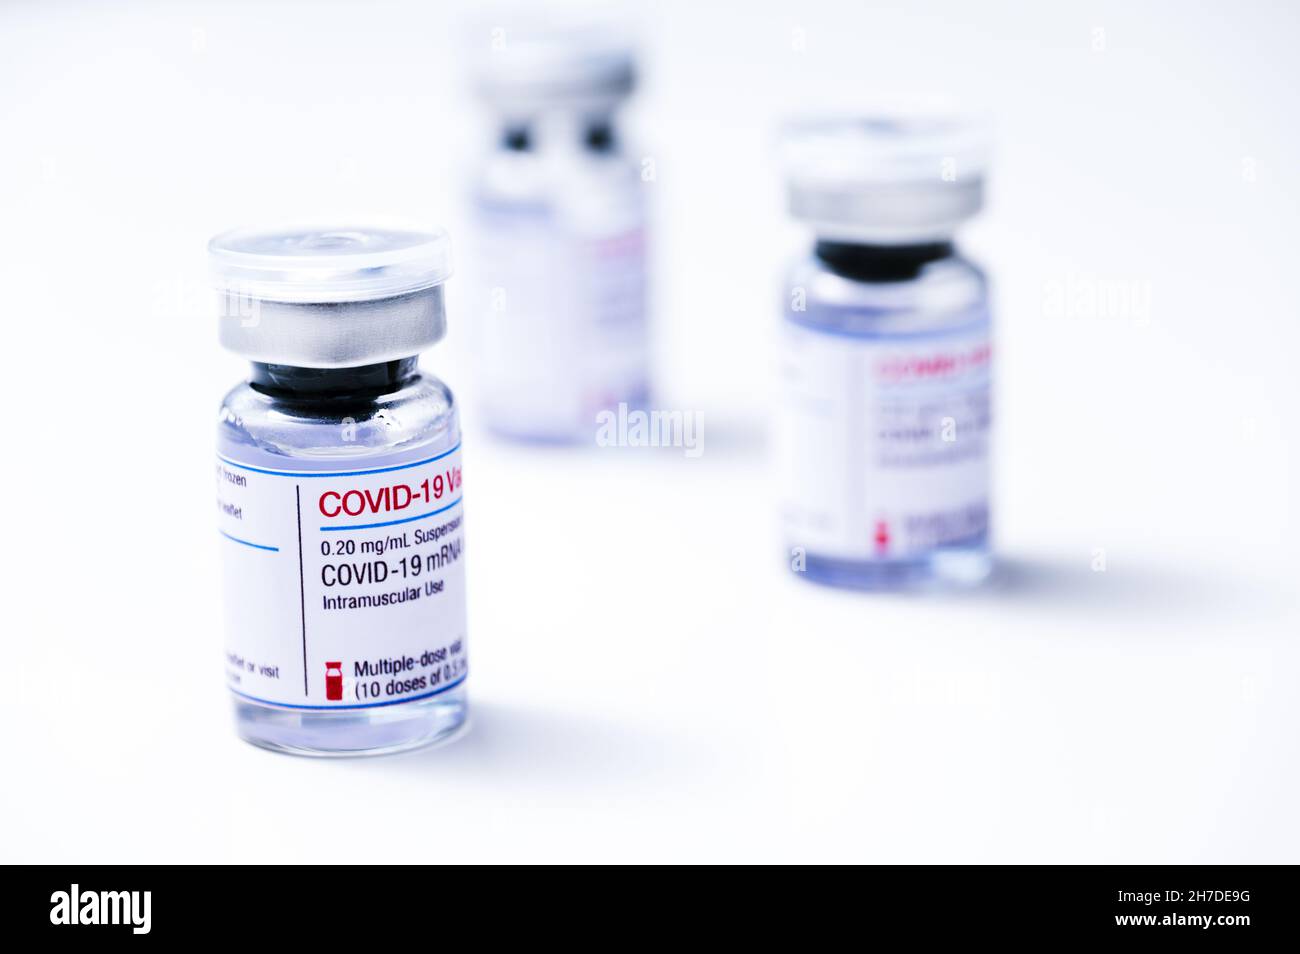 Coronavirus-Impfstoff, COVID-19-Impfstoff, Corona-Impfung. Fläschchen mit mRNA-Impfstoff zur Injektion auf weißem Hintergrund. Stockfoto